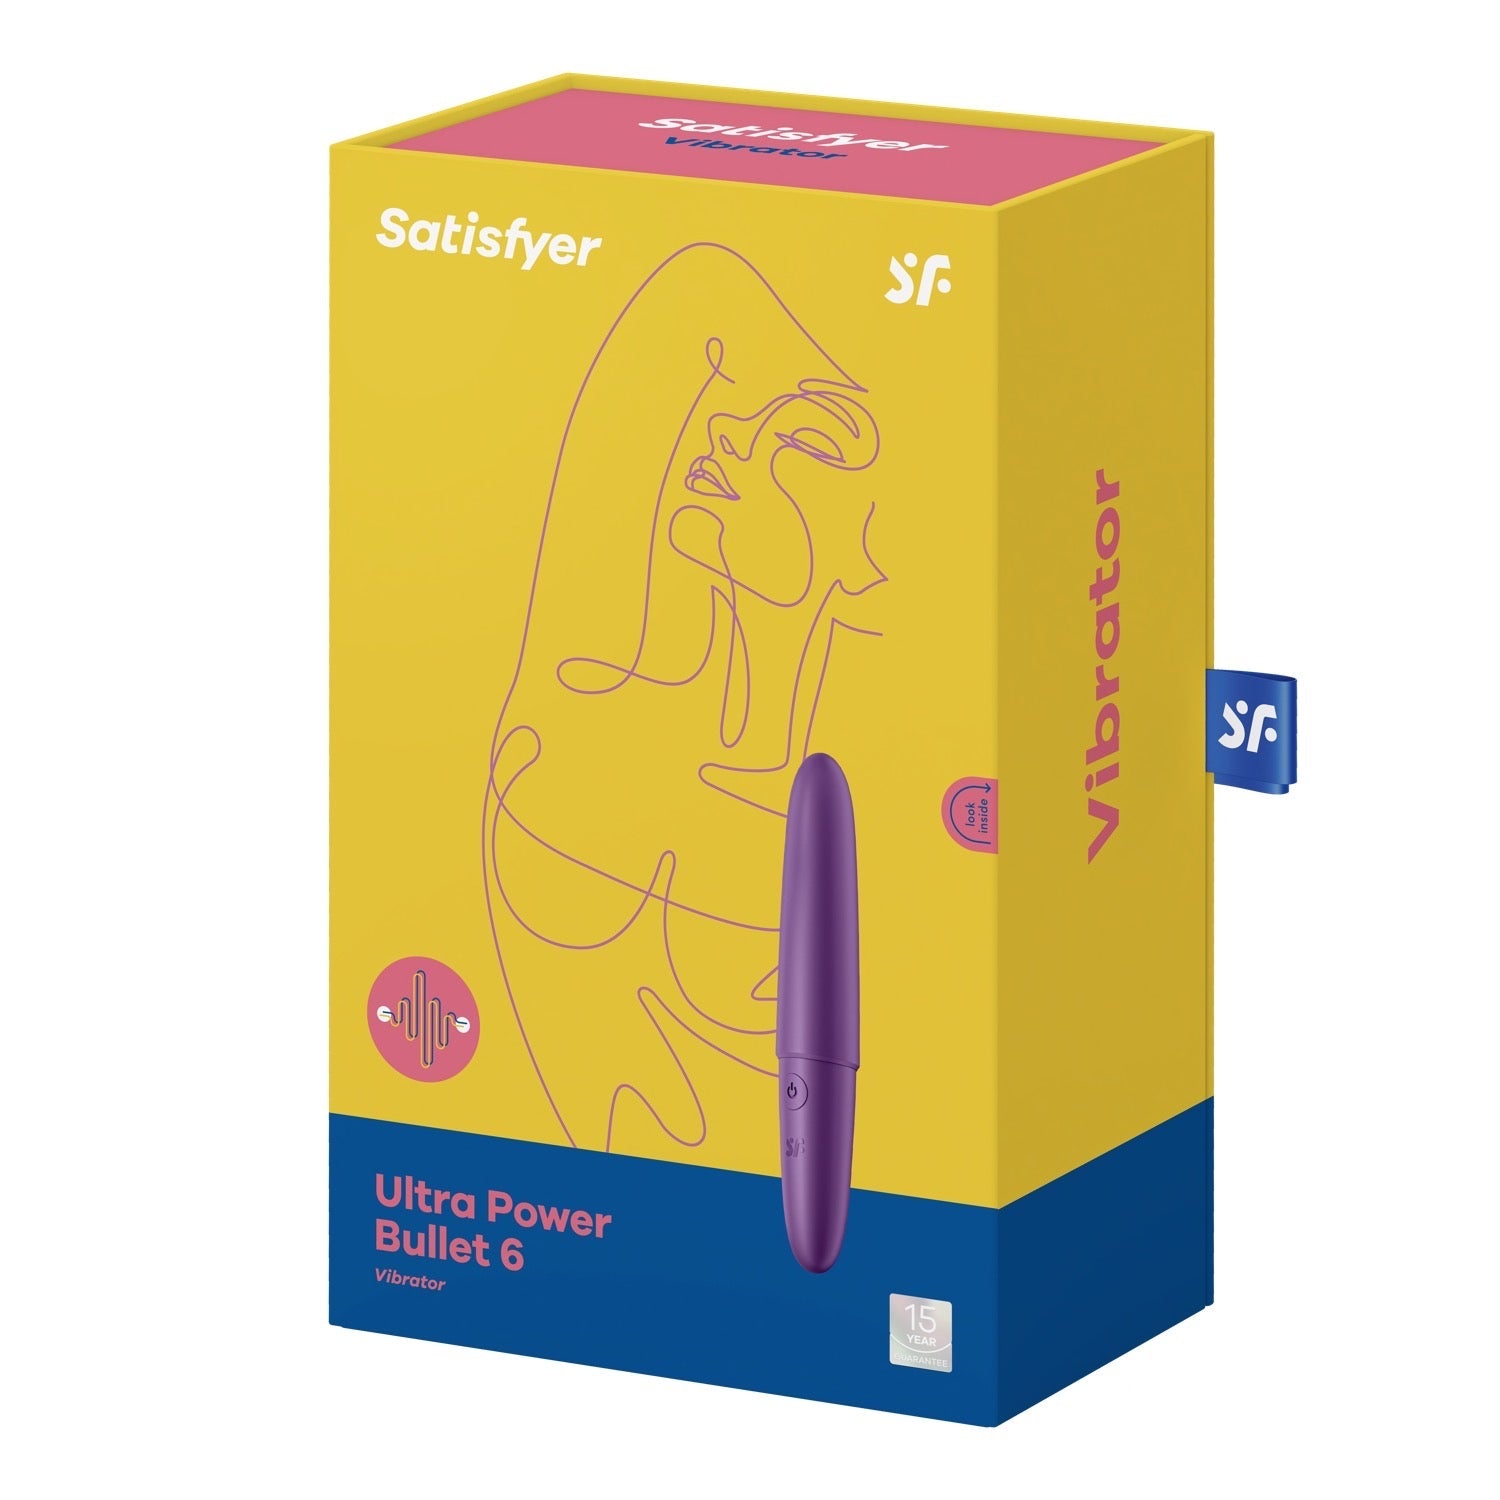 Satisfyer Ultra Power Bullet 6 - Purple by Satisfyer